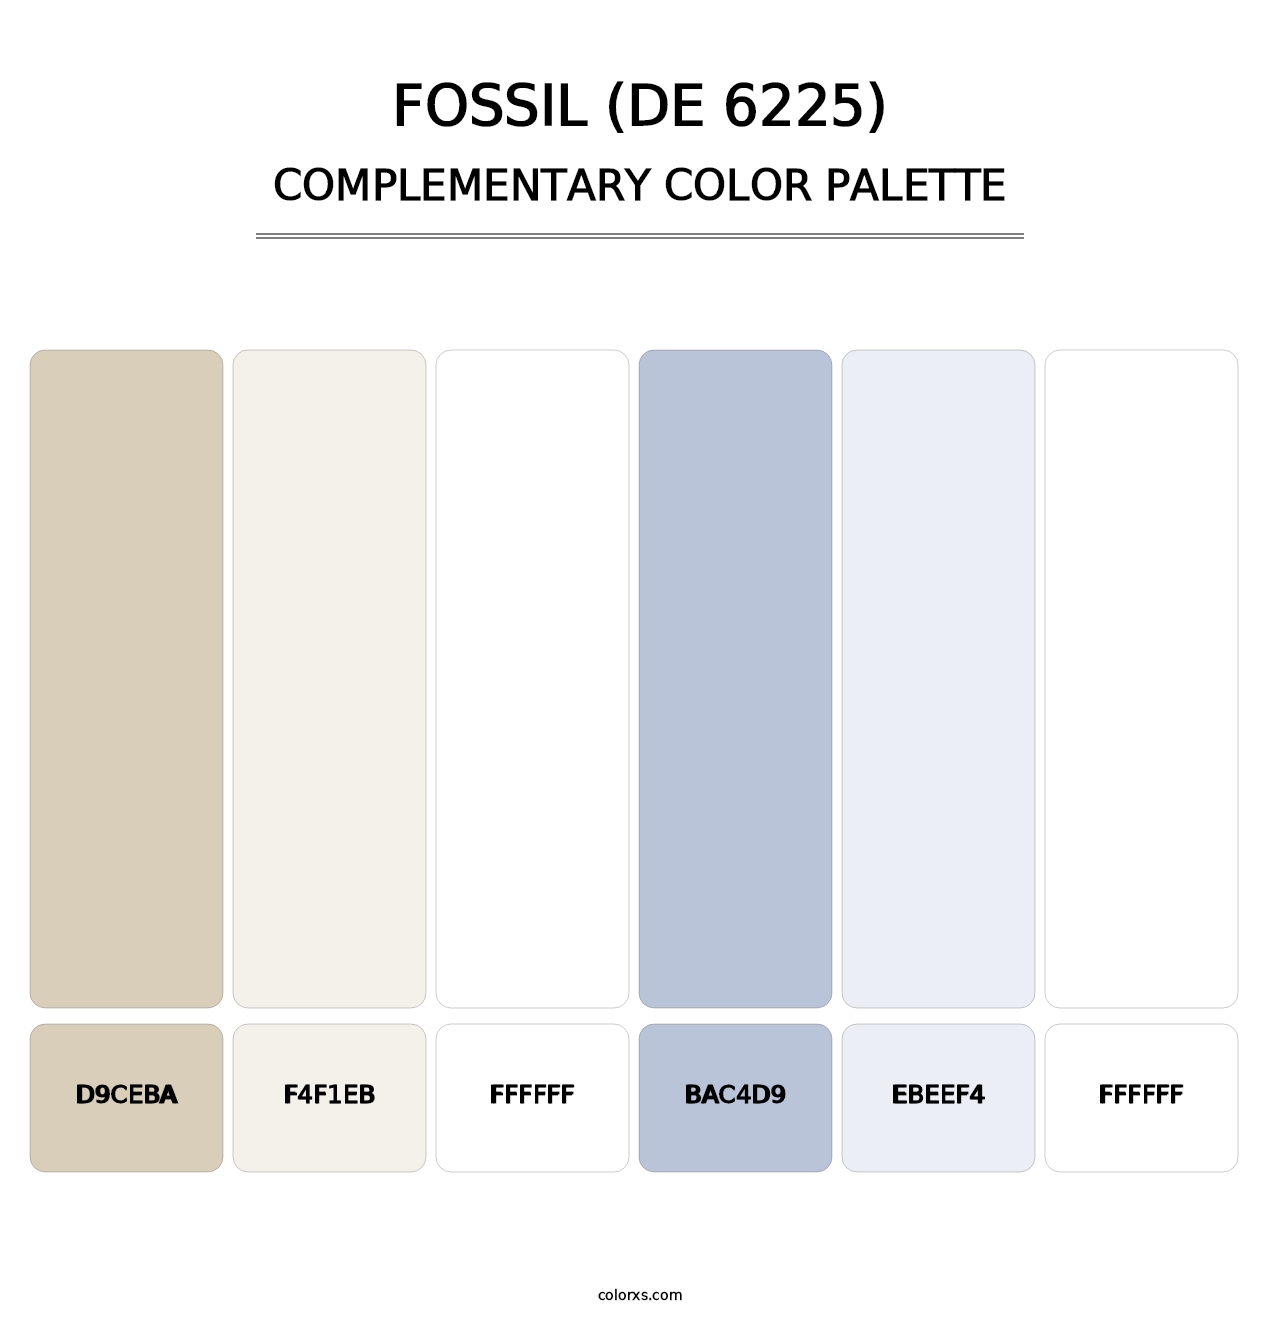 Fossil (DE 6225) - Complementary Color Palette